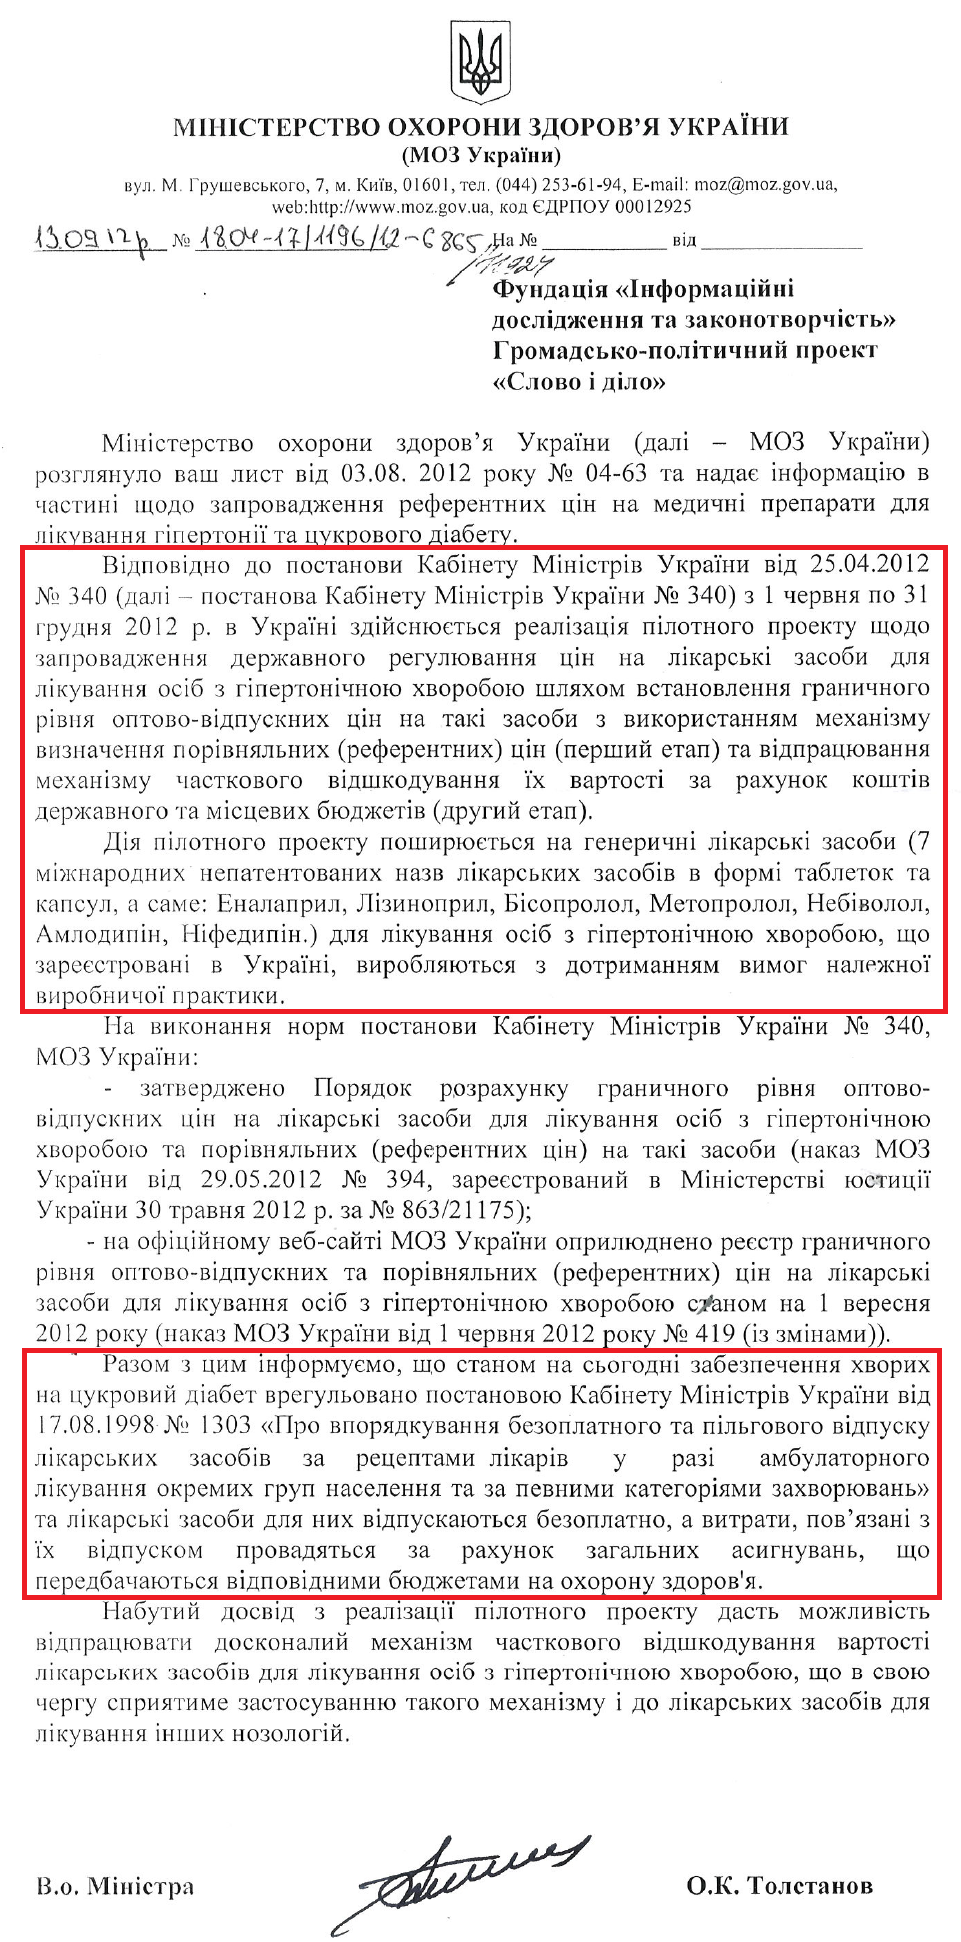 Лист В.о. Міністра охорони здоров'я О.К. Толстанова від 13 вересня 2012 року